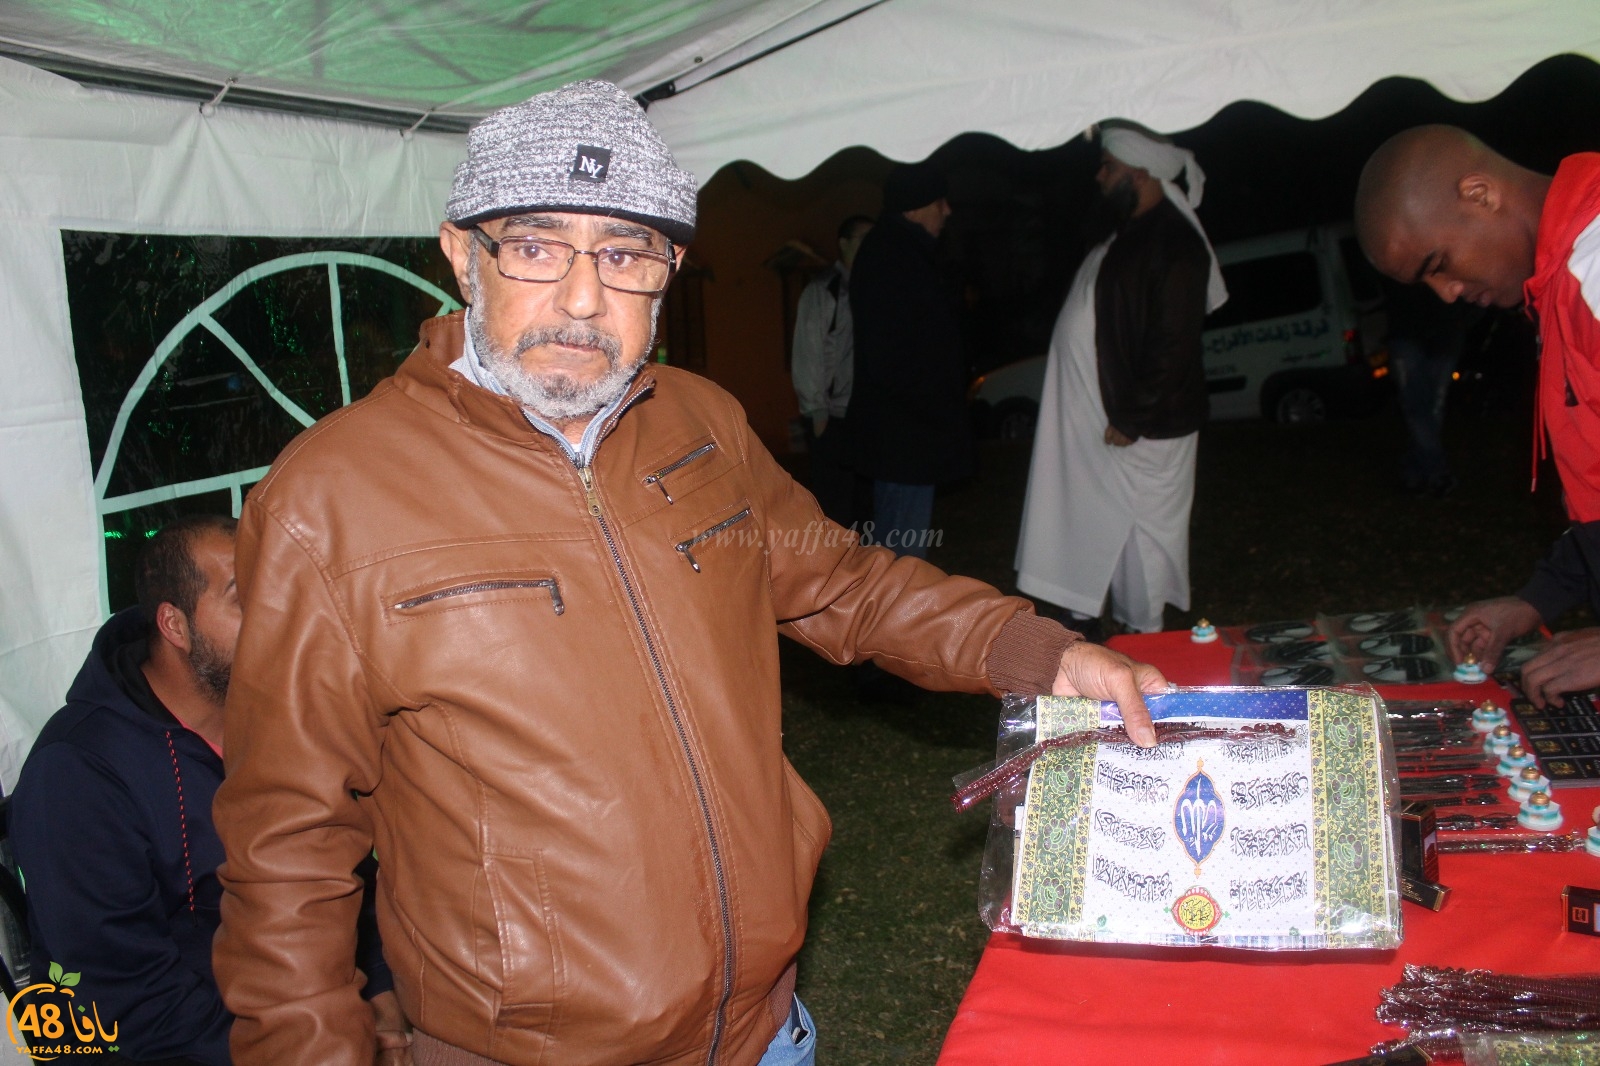  بالصور: خيمة الهدى الدعوية تُنظم أمسية دعوية في ضيافة عائلة دريعي بيافا